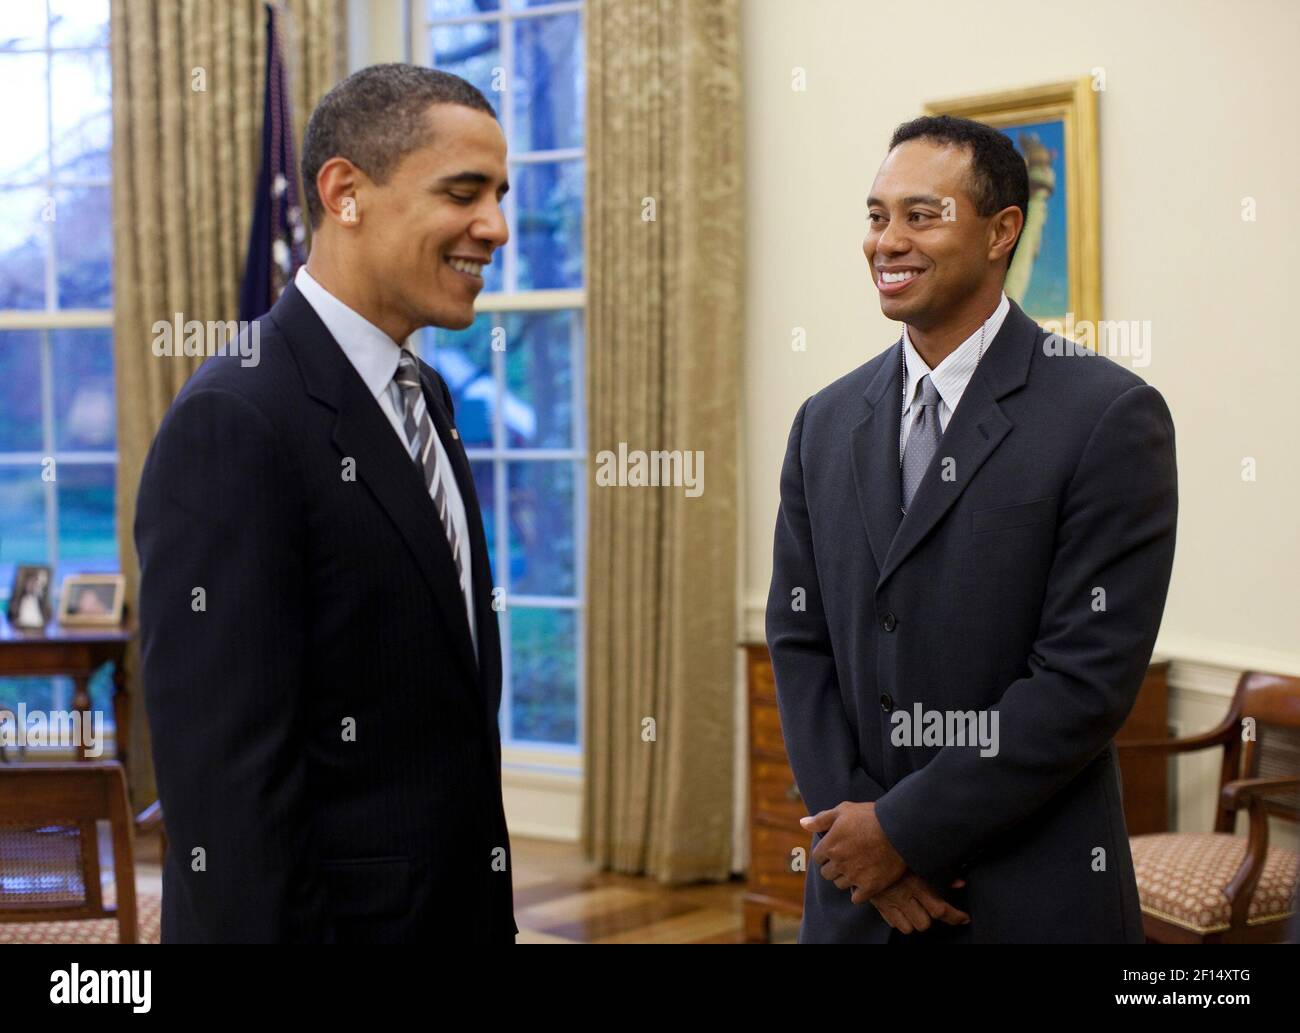 Le président Barack Obama accueille le golfeur professionnel Tiger Woods dans le bureau ovale le lundi 20 avril 2009. Le grand gagnant de 14 ans s'est rendu à la Maison Blanche lundi après une conférence de presse pour l'AT&T National, le PGA Tour Woods accueille au Congressional Country Club du 29 juin au 5 juillet. Photo officielle de la Maison Blanche par Pete Souza Banque D'Images